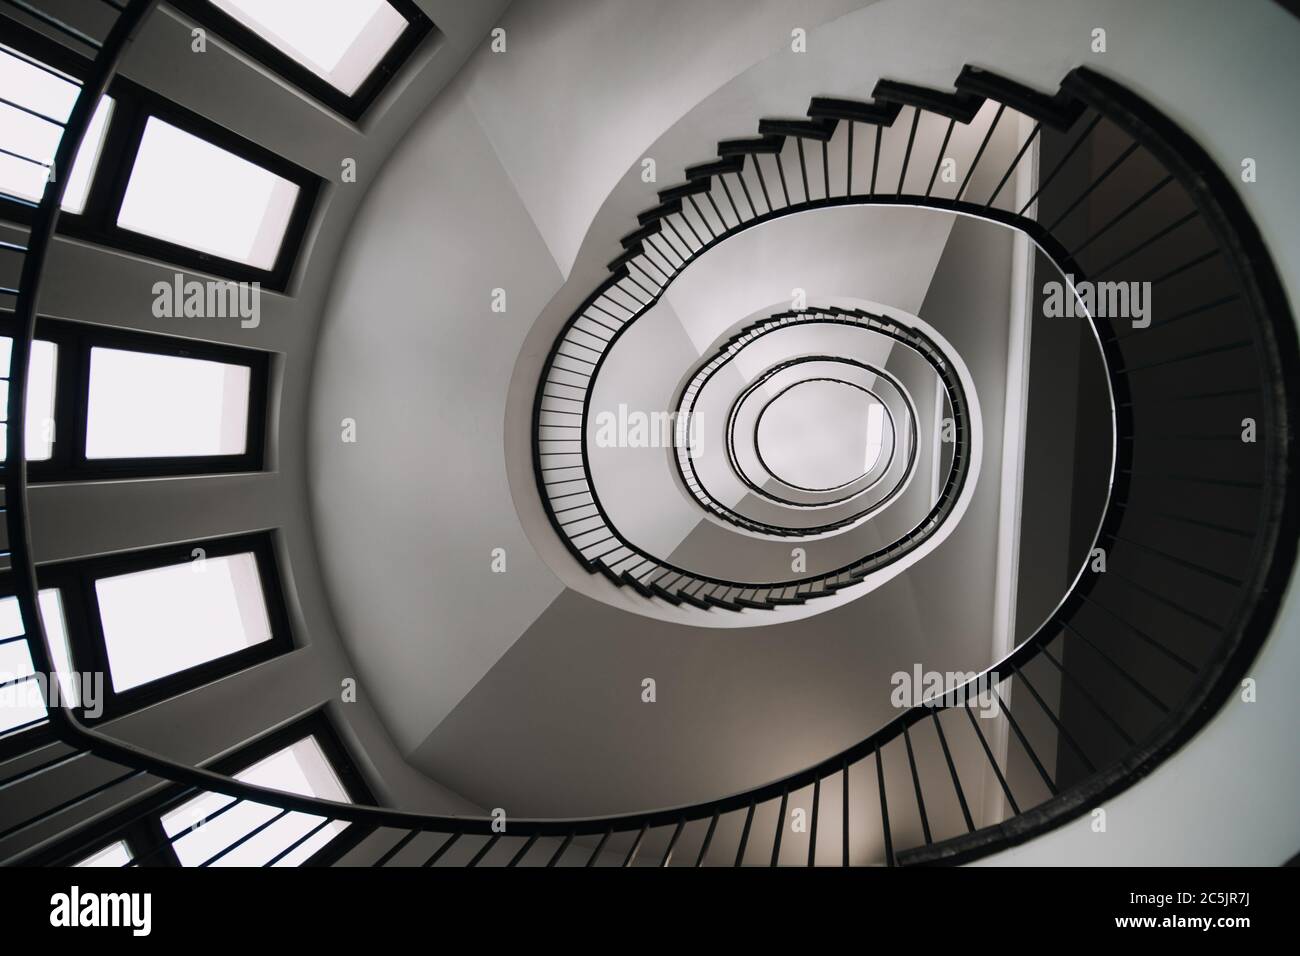 en regardant profondément dans le long escalier en spirale de grand bâtiment, concept photo de l'architecture Banque D'Images